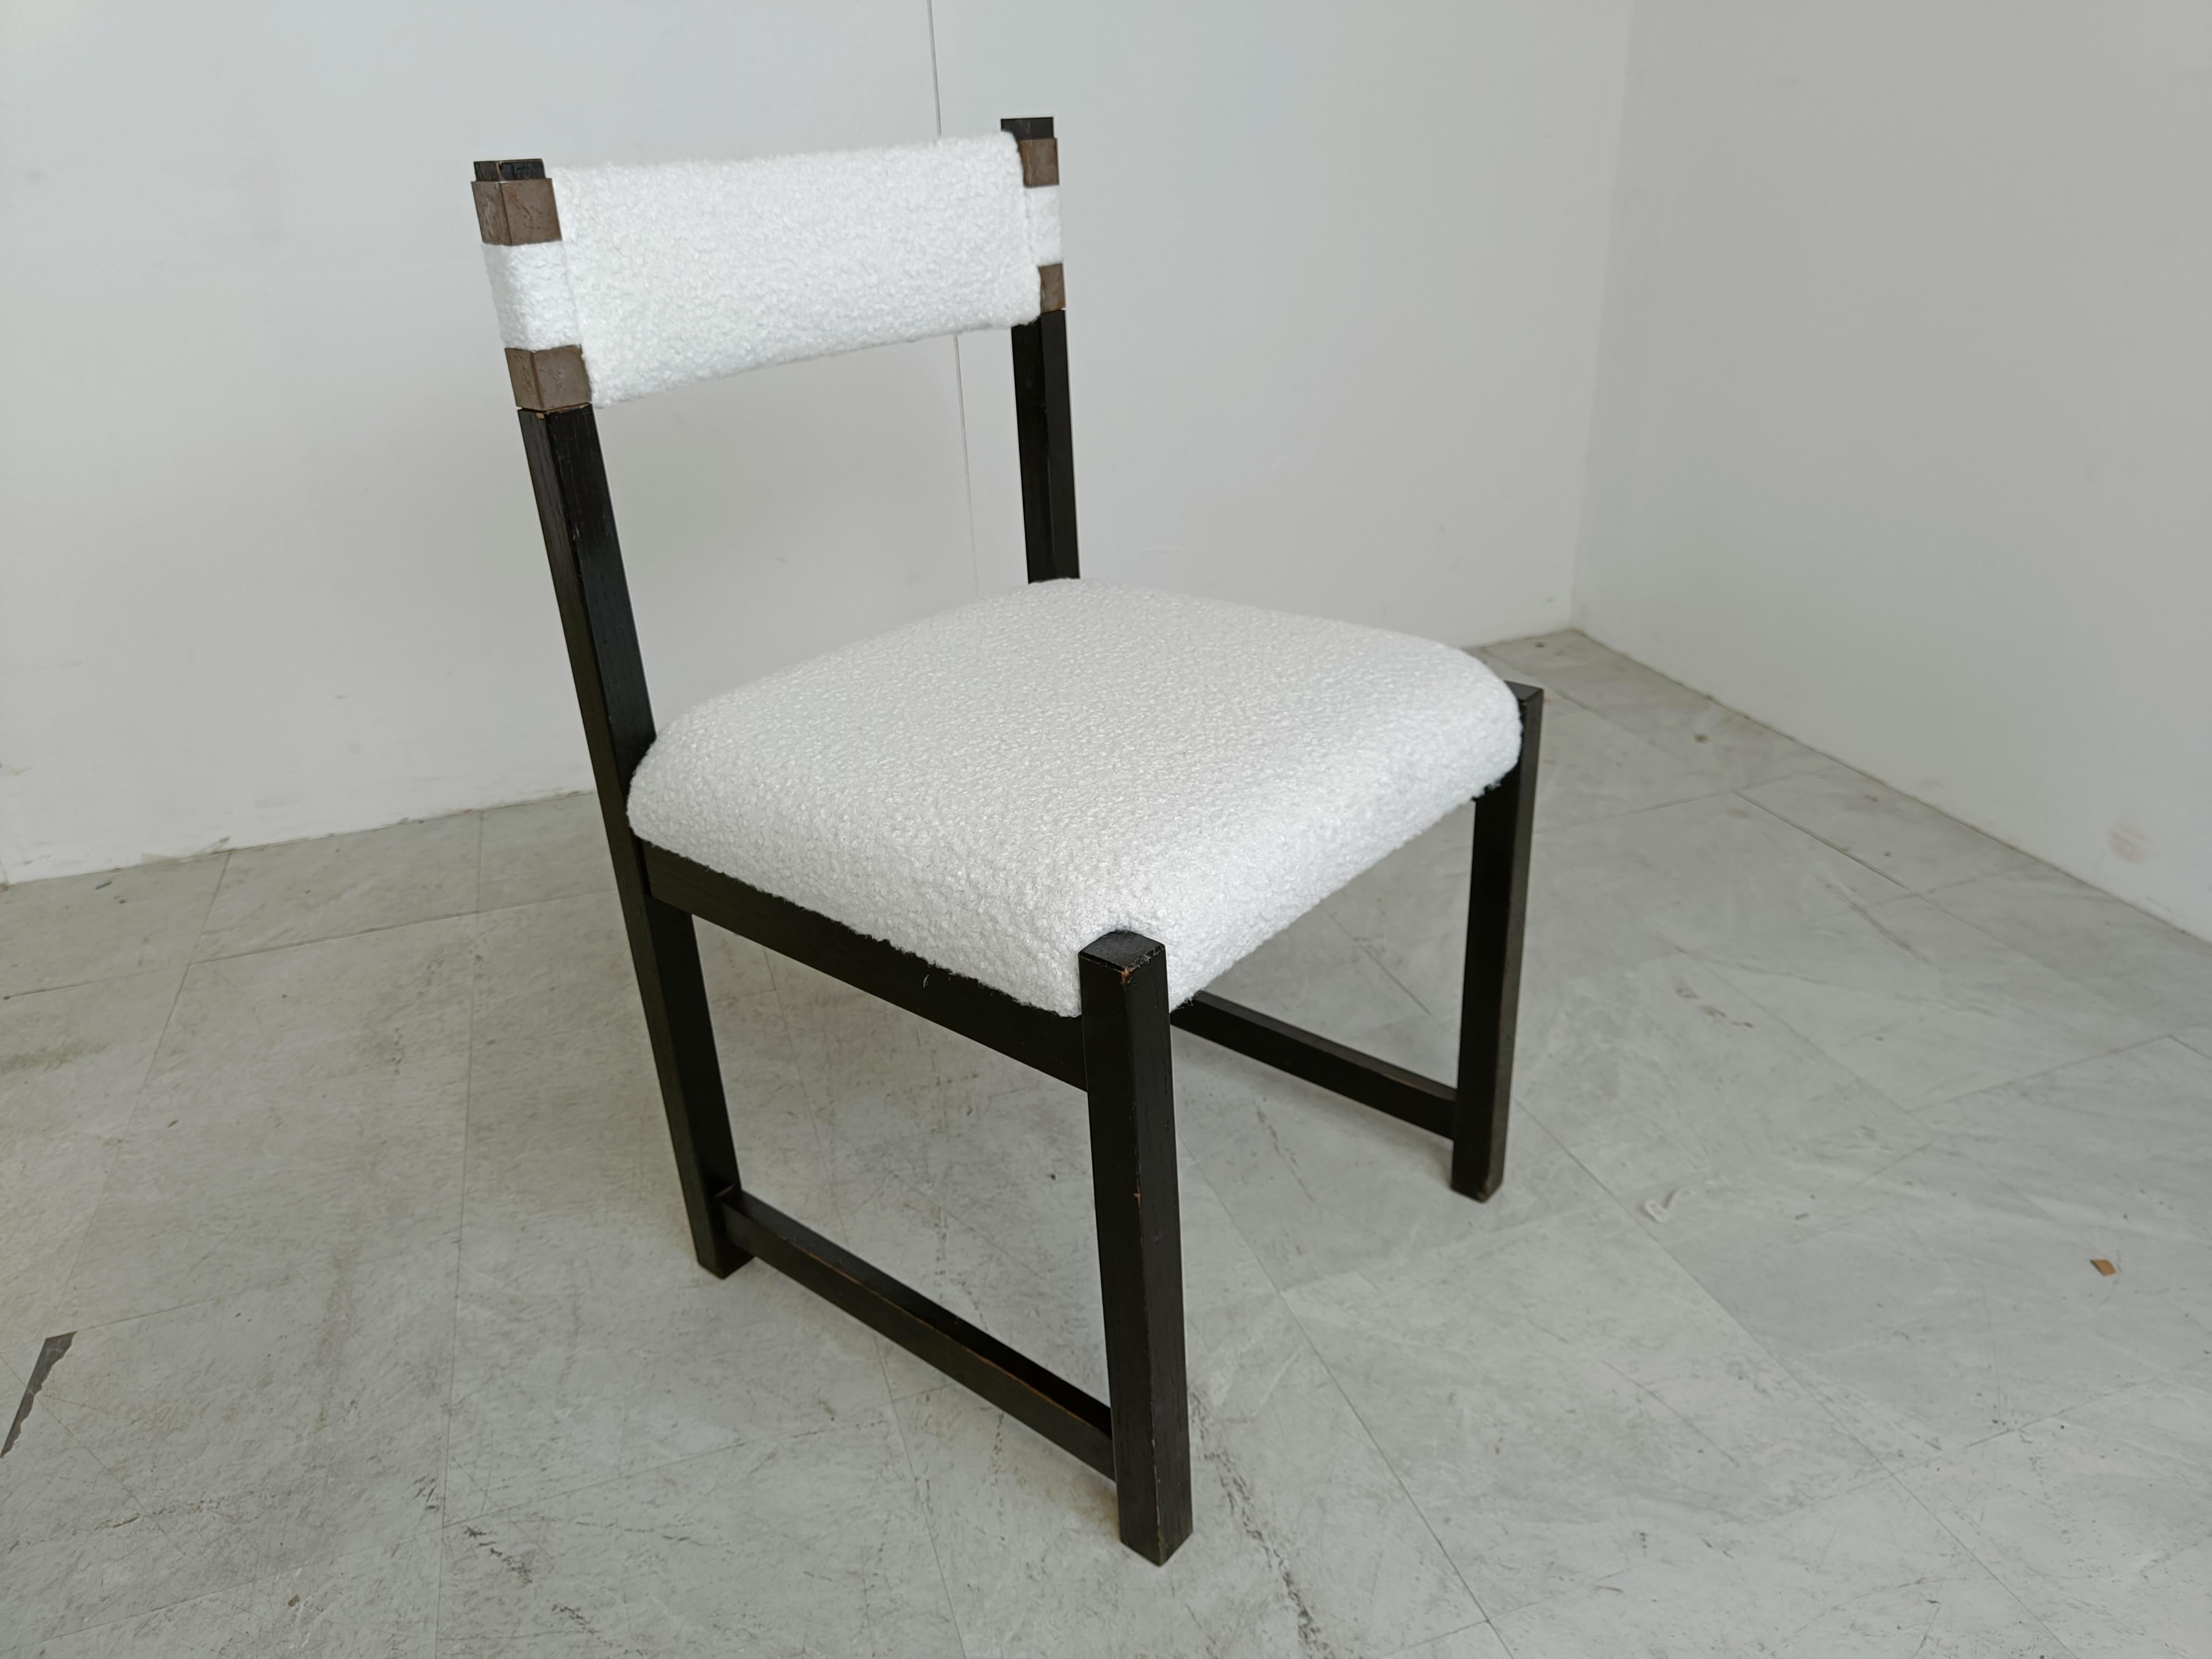 Vintage-Esszimmerstühle aus Bouclé-Stoff und ebonisiertem Holz, entworfen von Emiel Veranneman und hergestellt von Decoene.

Zeitloses belgisches Design.

Die Rahmen sind in gutem Zustand und die Sitze sind neu gepolstert.

1970er Jahre -